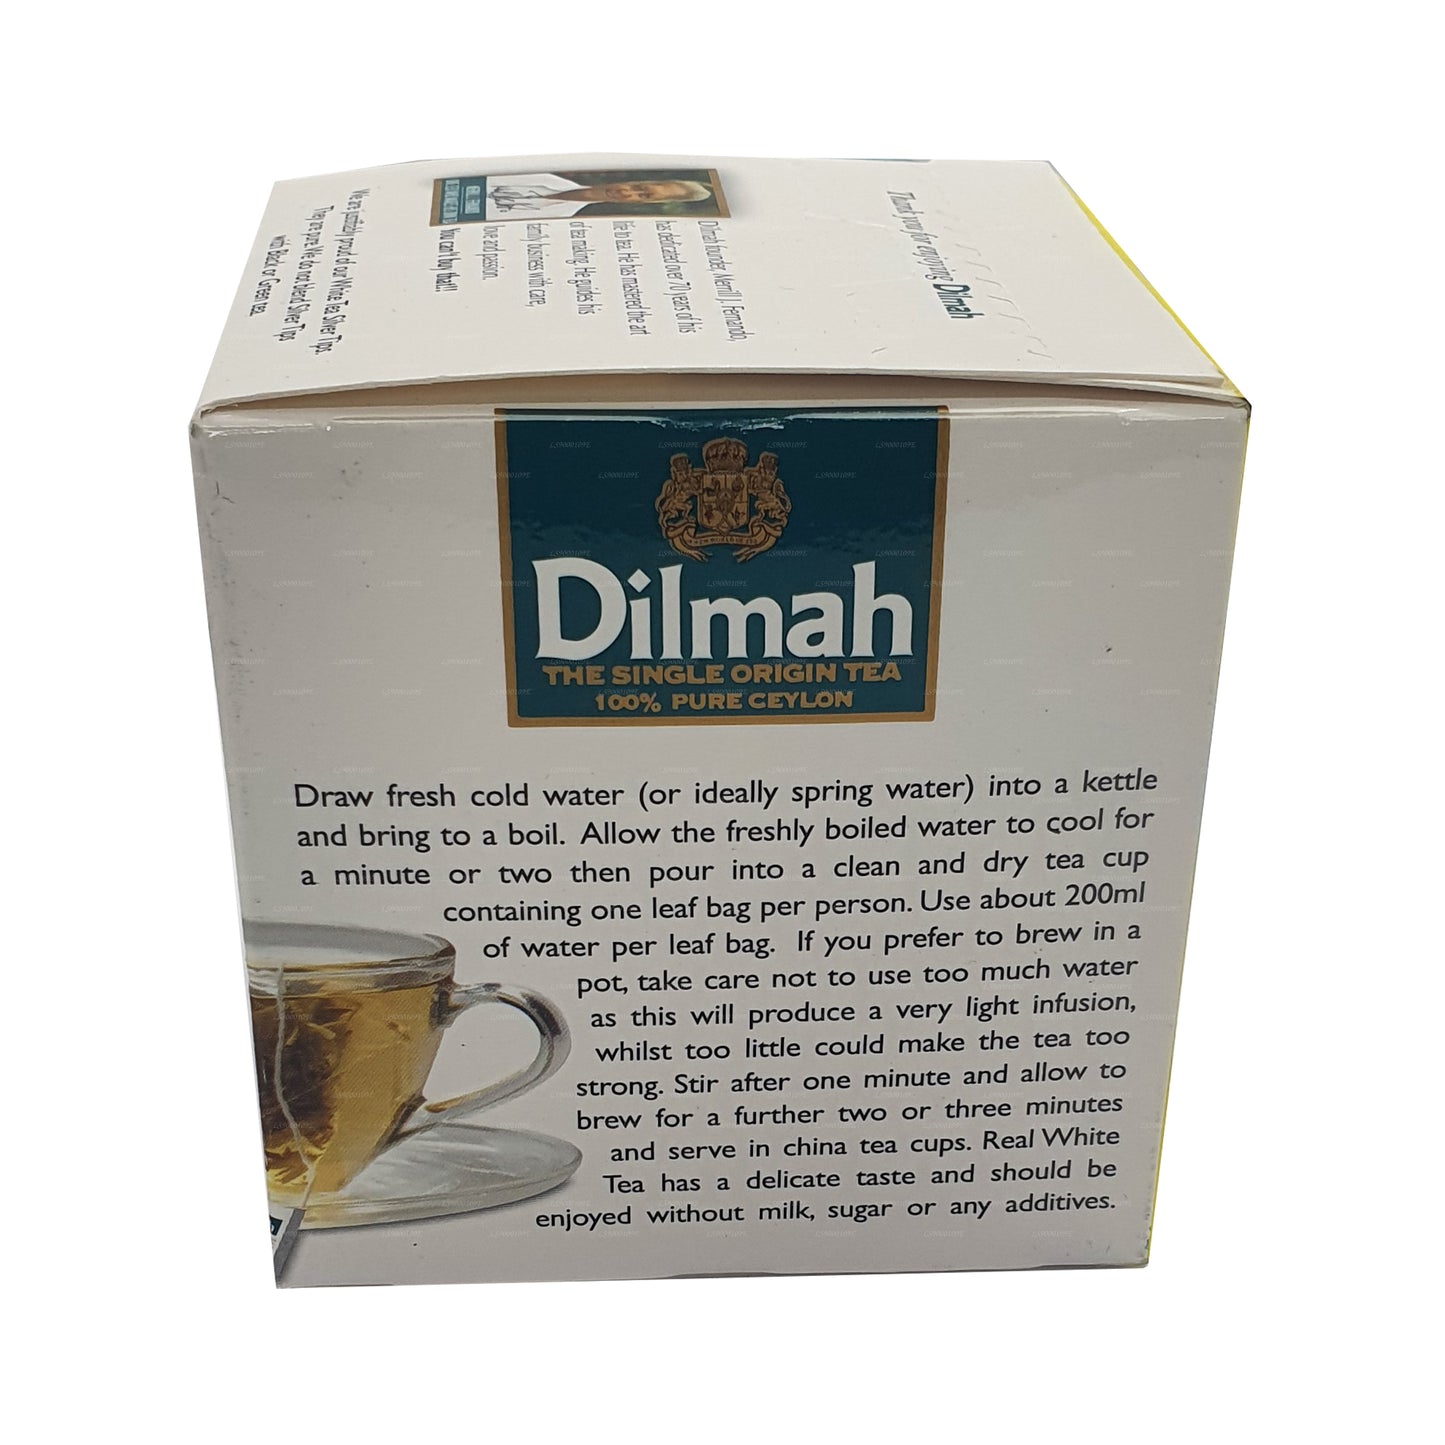 Dilmah Real White Tea Ceylon Silver Tips (20g) 10 Tea Bags